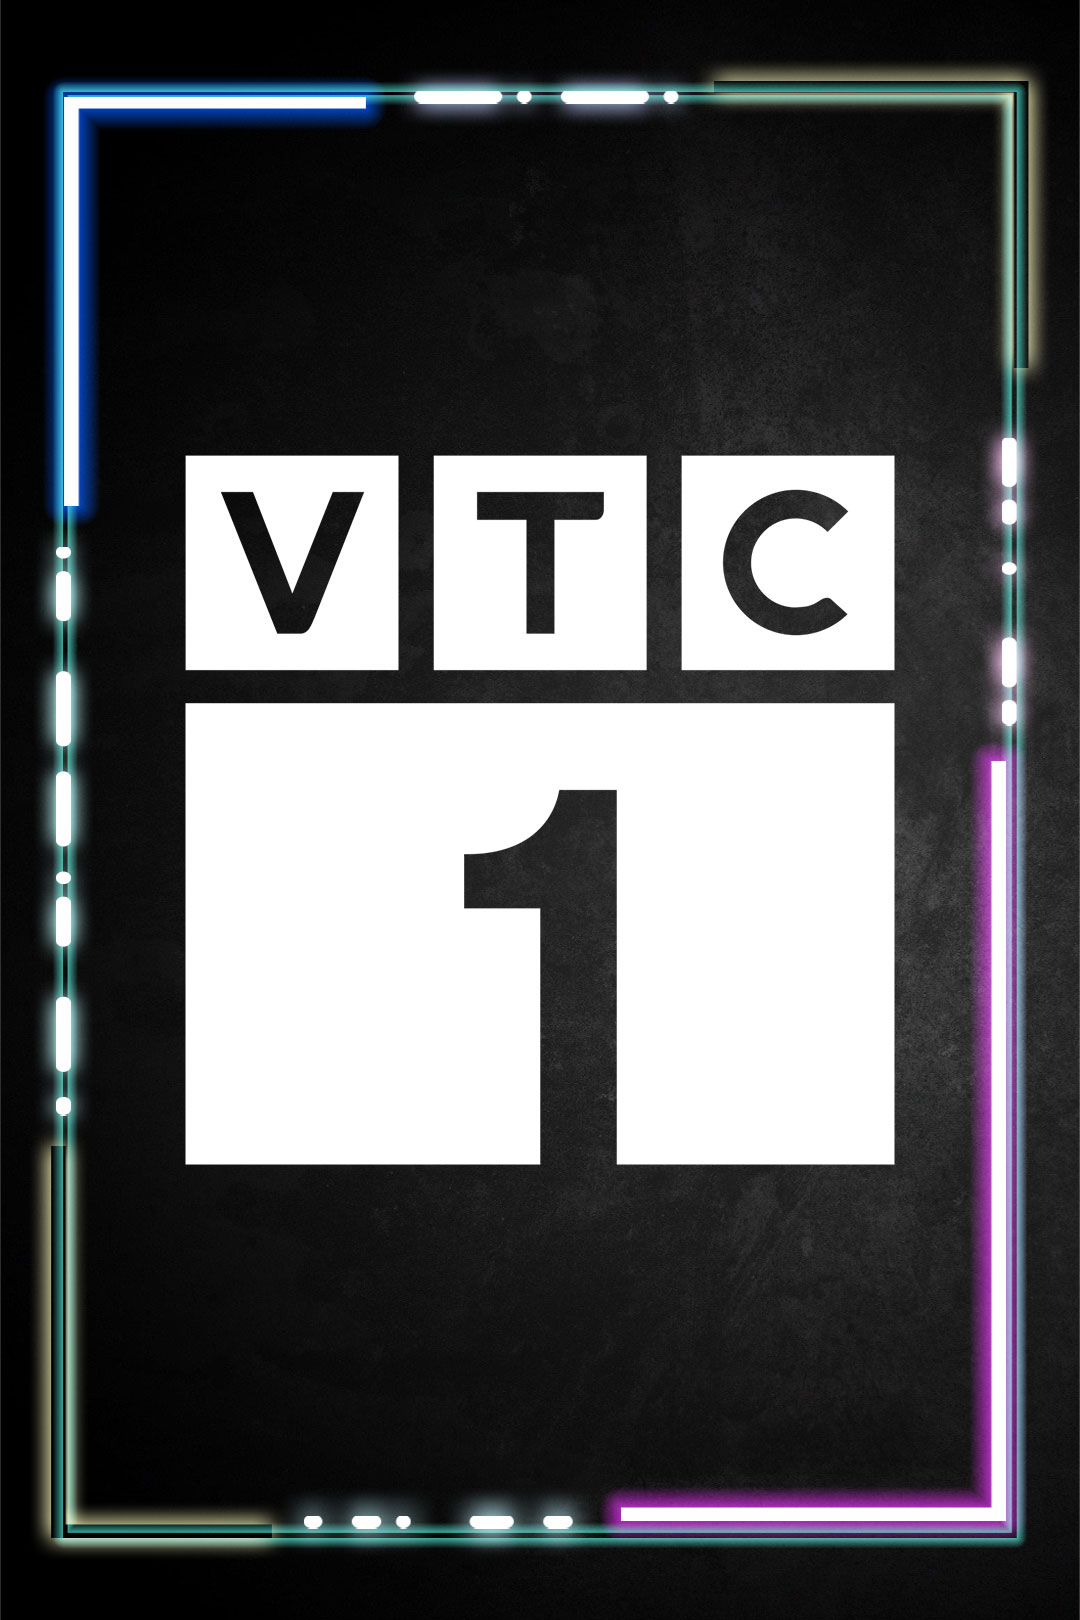 VTC1